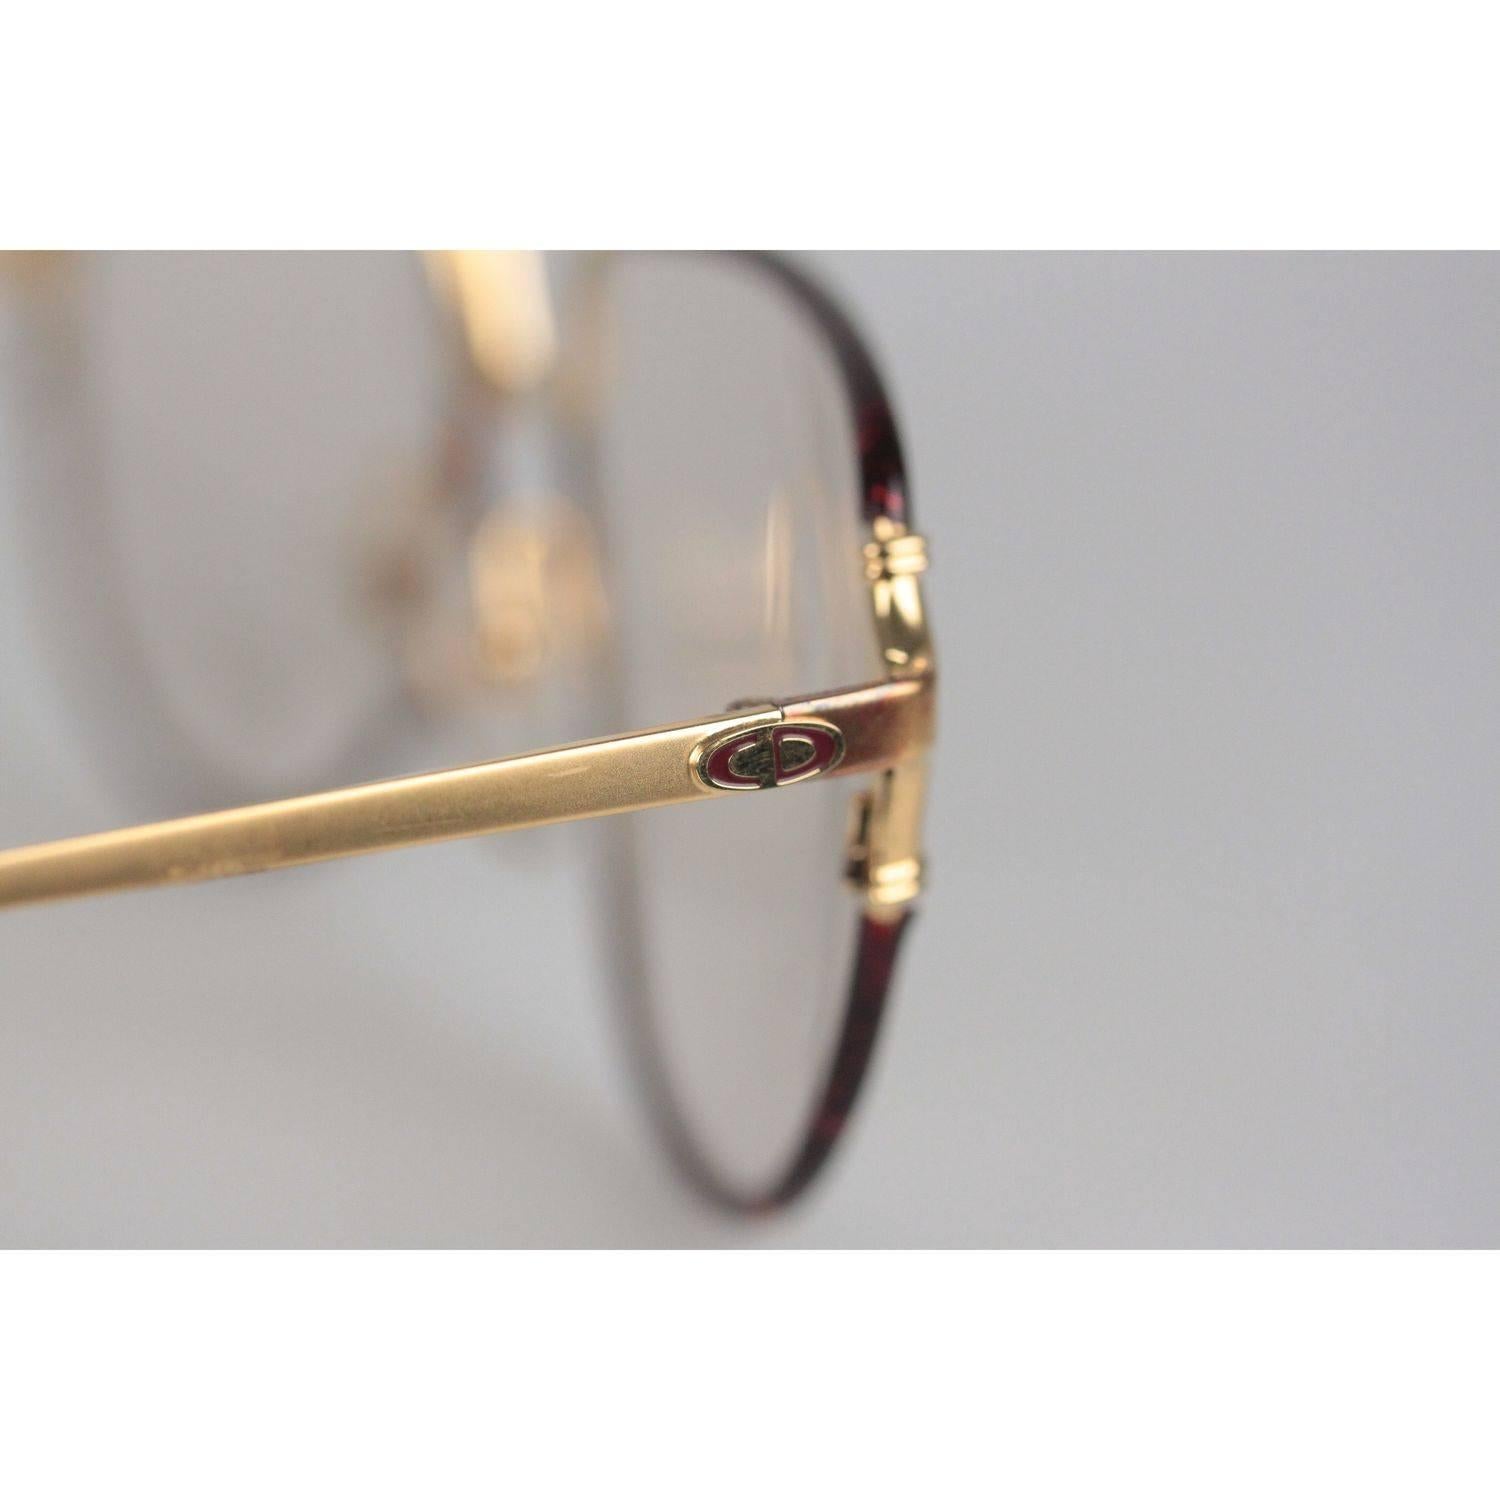 Christian Dior Monsieur Vintage Gold Brown Frame Eyeglasses 2327 59mm 140 NOS 3